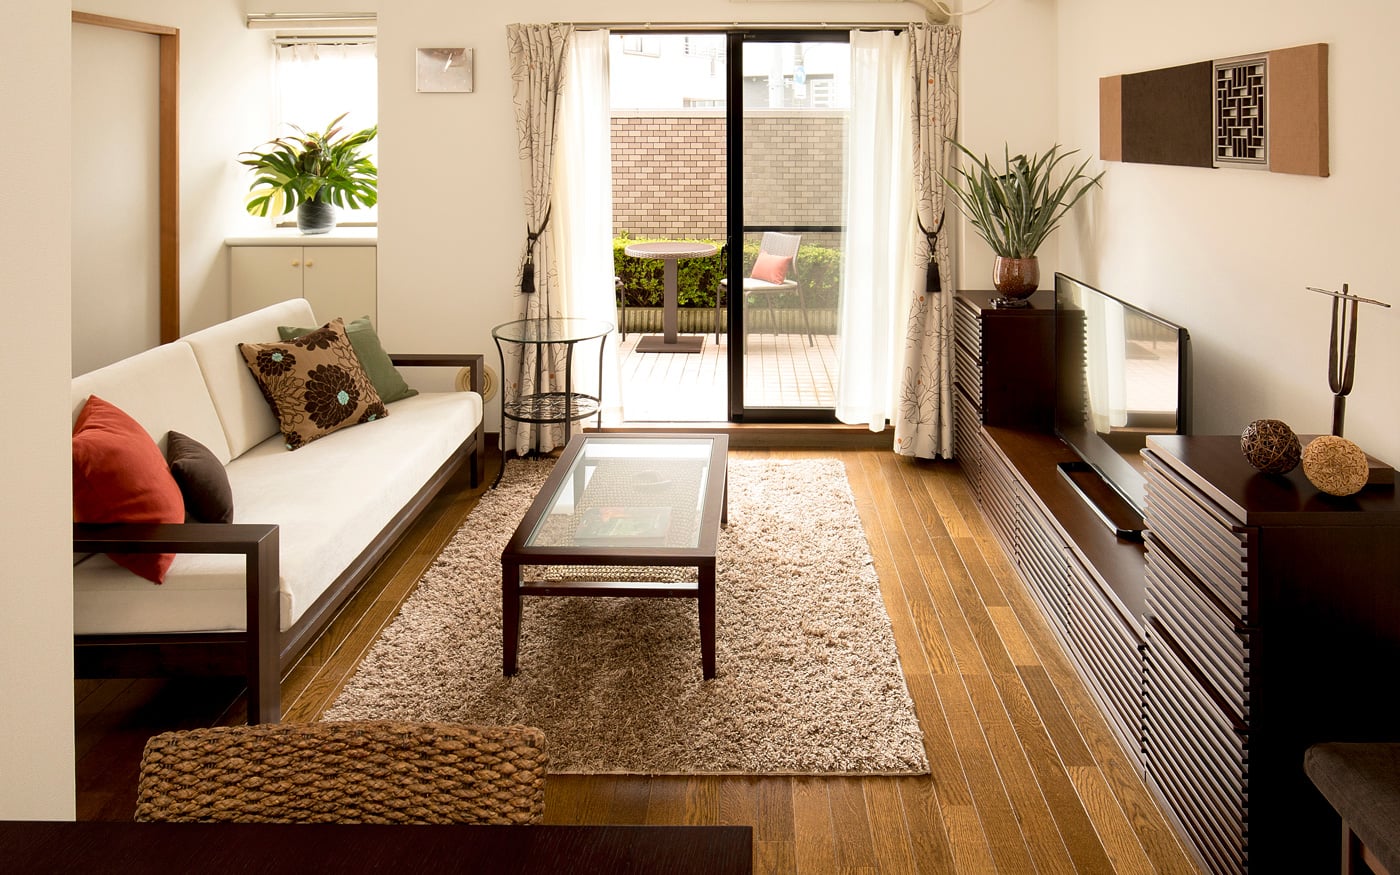 部屋の快適な家具配置とレイアウト例 1ldk 2ldk 3ldk A Flat